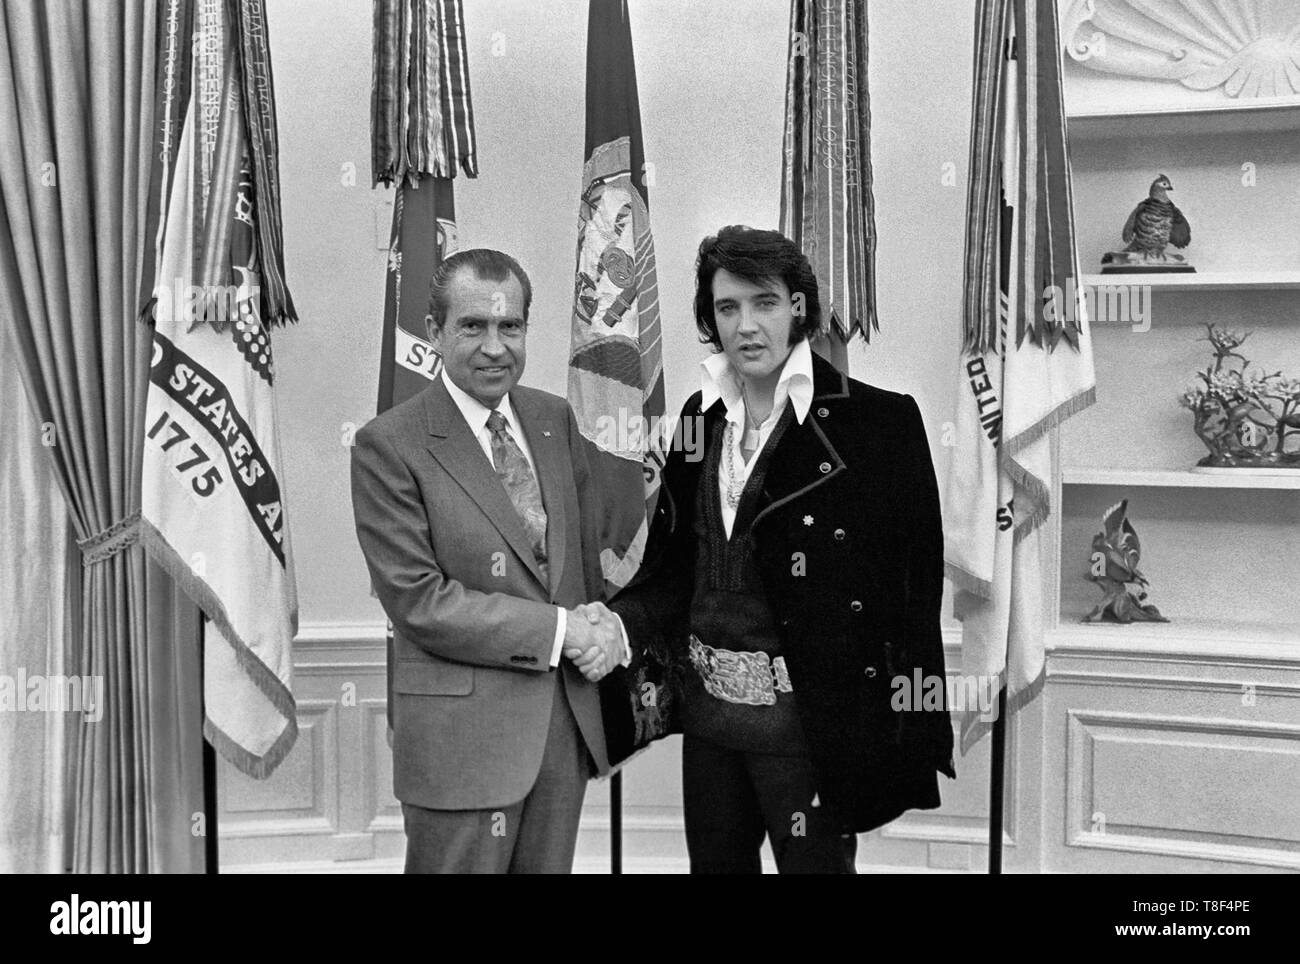 Elvis Presley, Richard Nixon. Am 21. Dezember 1970, auf eigenen Wunsch, Presley met dann - Präsident Richard Nixon im Oval Office des Weißen Hauses. Elvis ist auf der rechten Seite. Waggishly, dieses Bild wird gesagt, "der zwei größten Künstler des 20. Jahrhunderts". Stockfoto